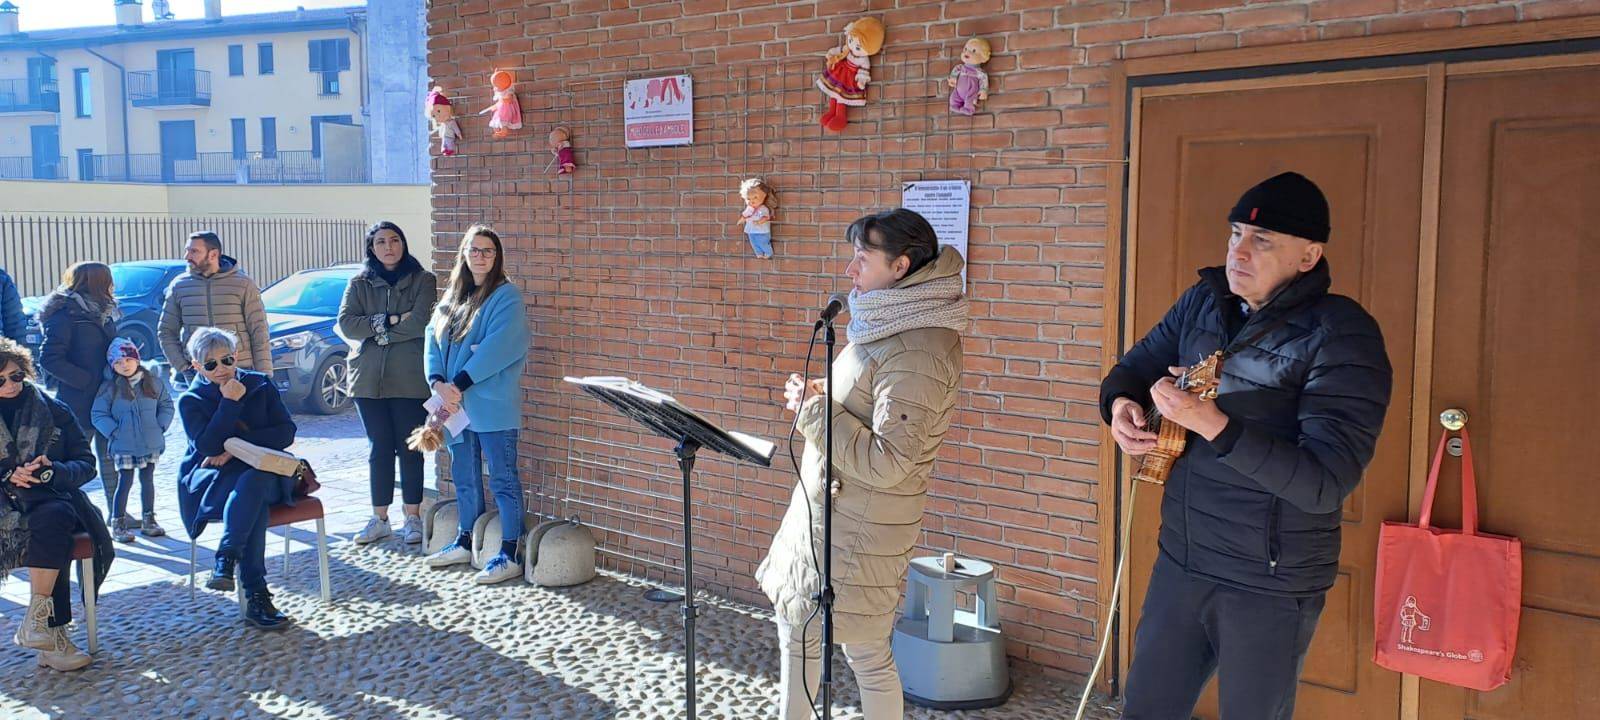 Taglio del nastro per il nuovo "muro delle bambole" contro la violenza sulle donne a Nerviano